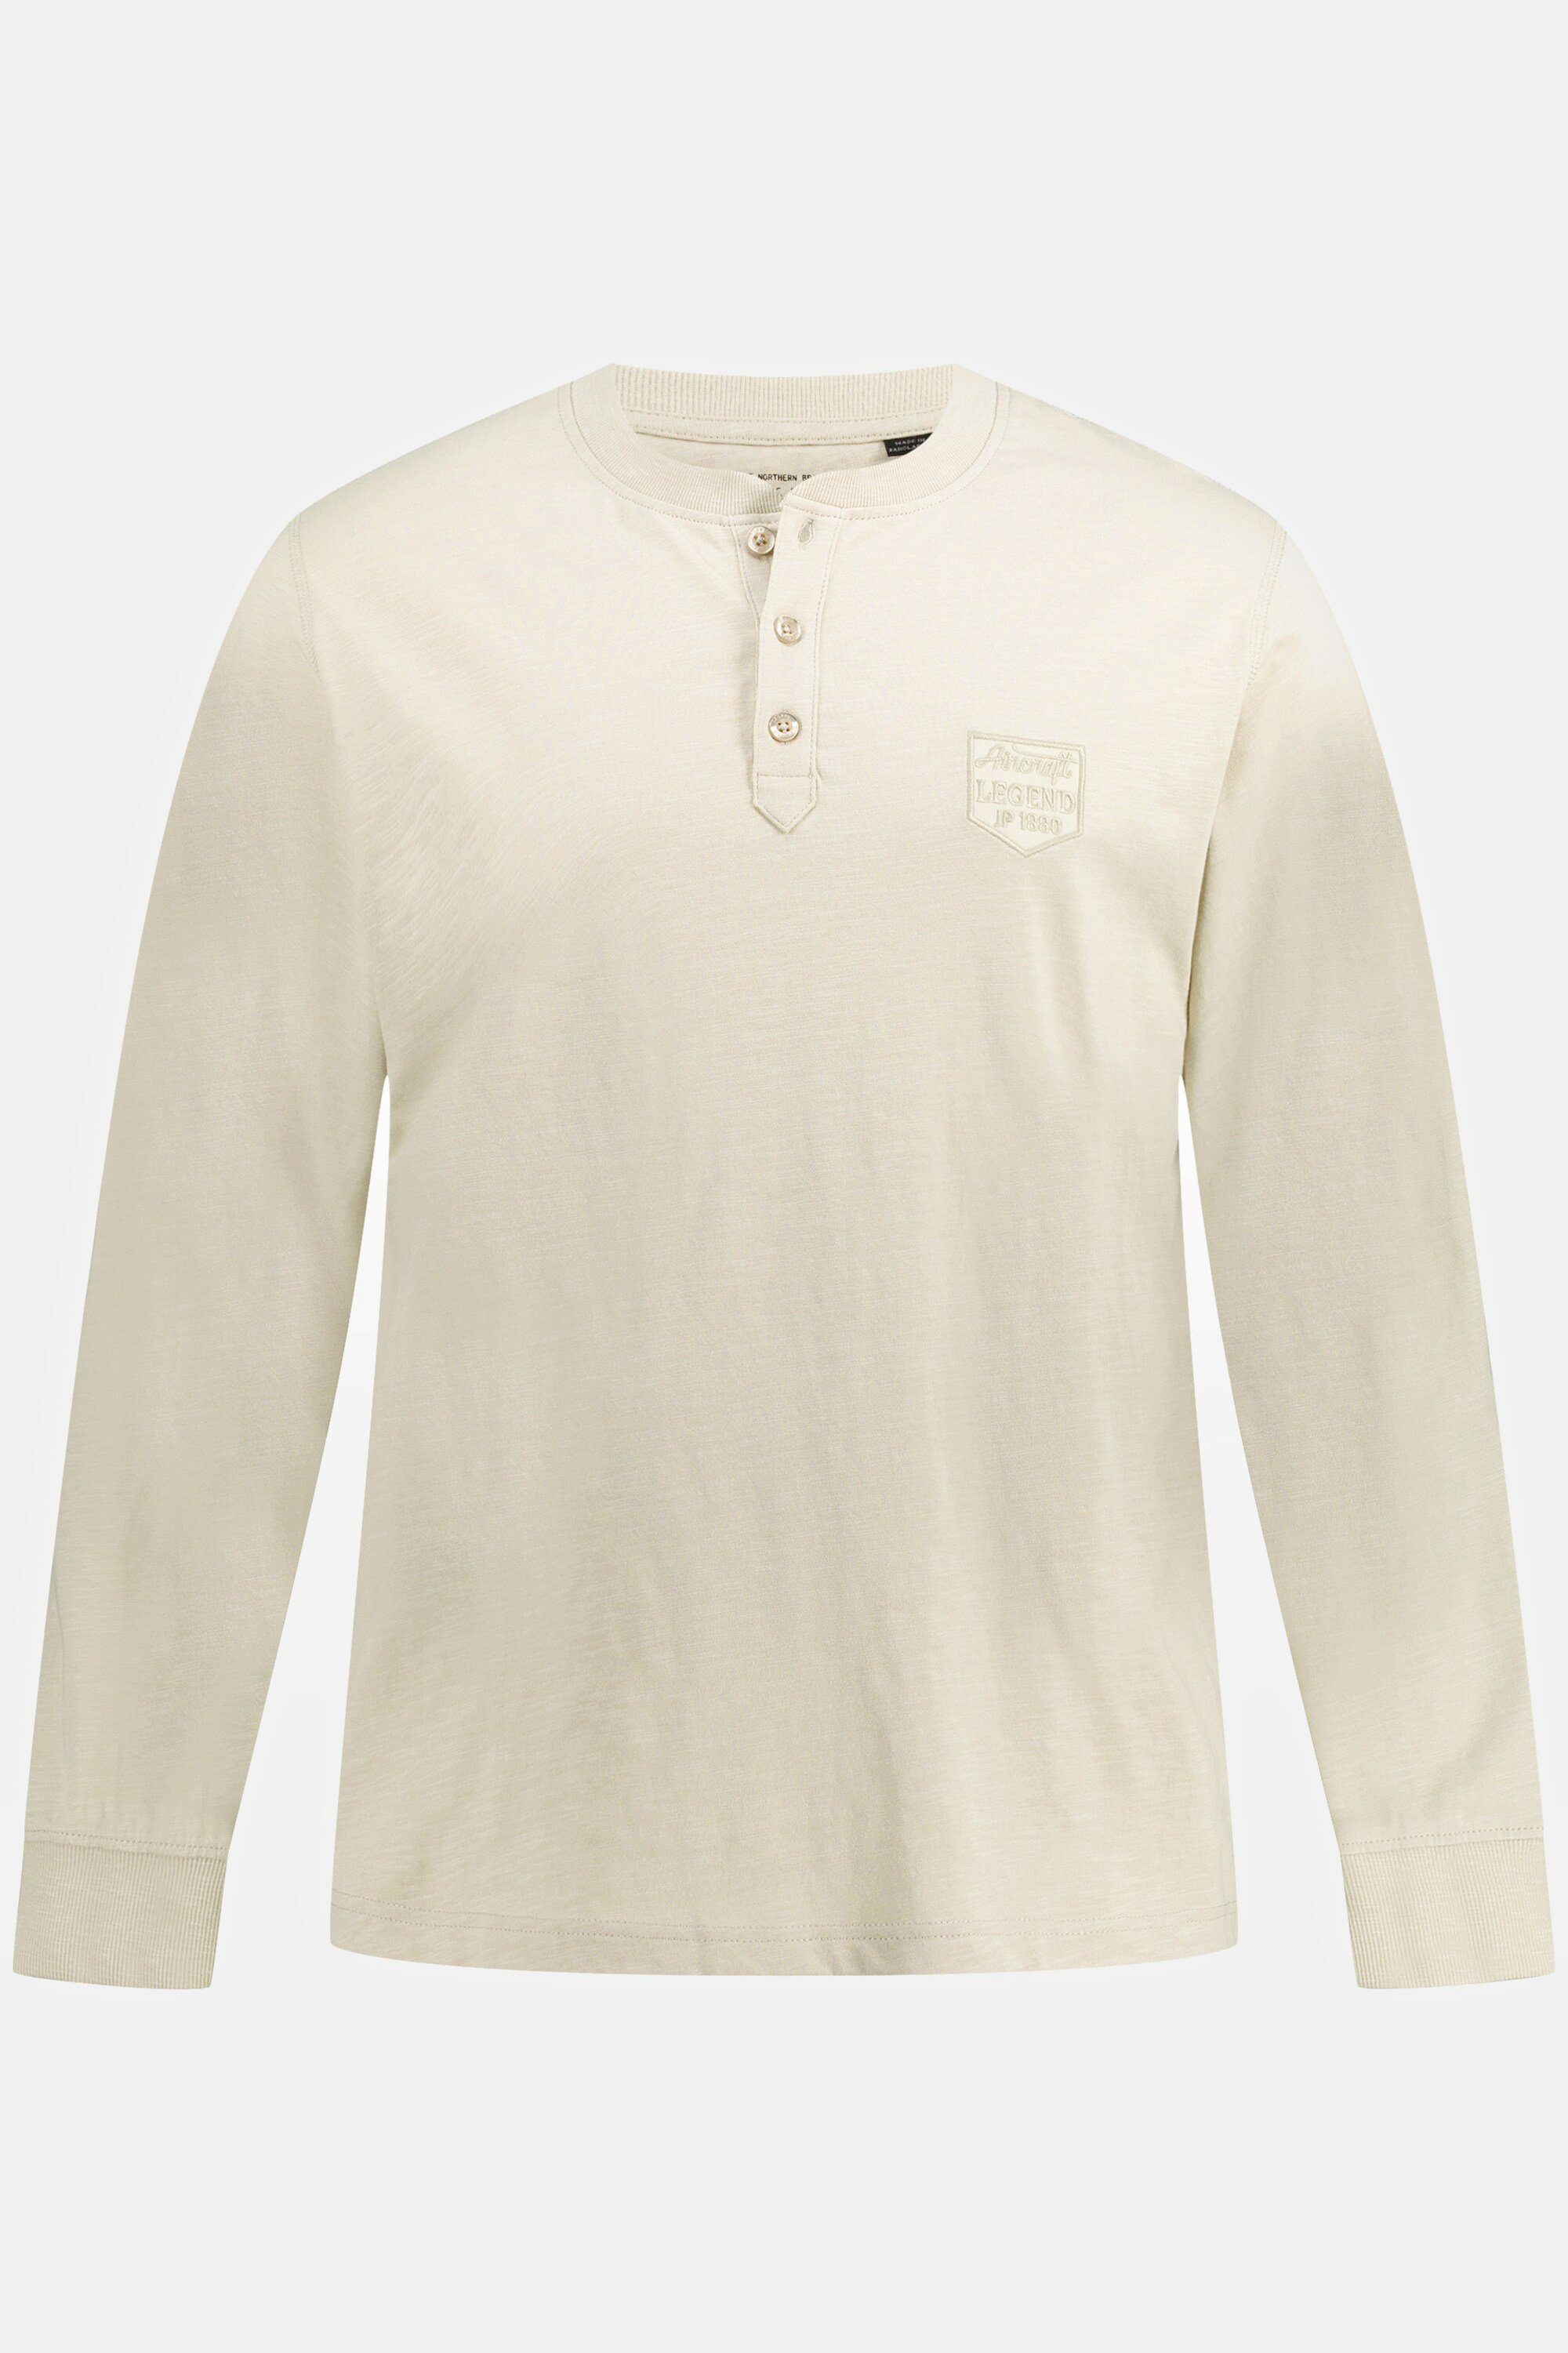 JP1880 T-Shirt Henley Rundhals Langarm Knopfleiste sand-beige Flammjersey